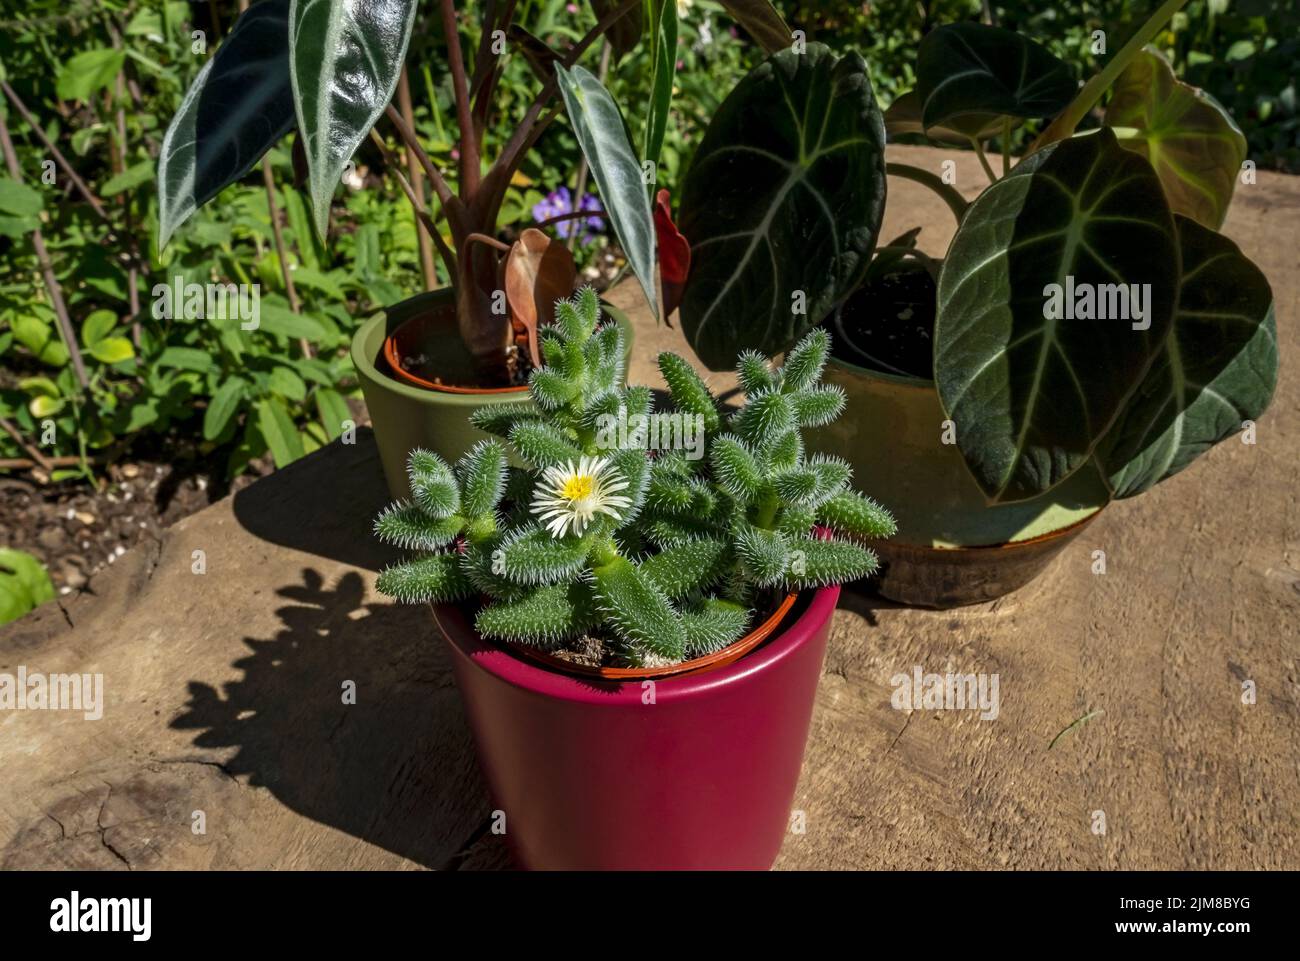 Gros plan de pots de plantes de maison alocasia reginula velours noir amazonica delosperma bambino plantes en été Angleterre Royaume-Uni Grande-Bretagne Banque D'Images